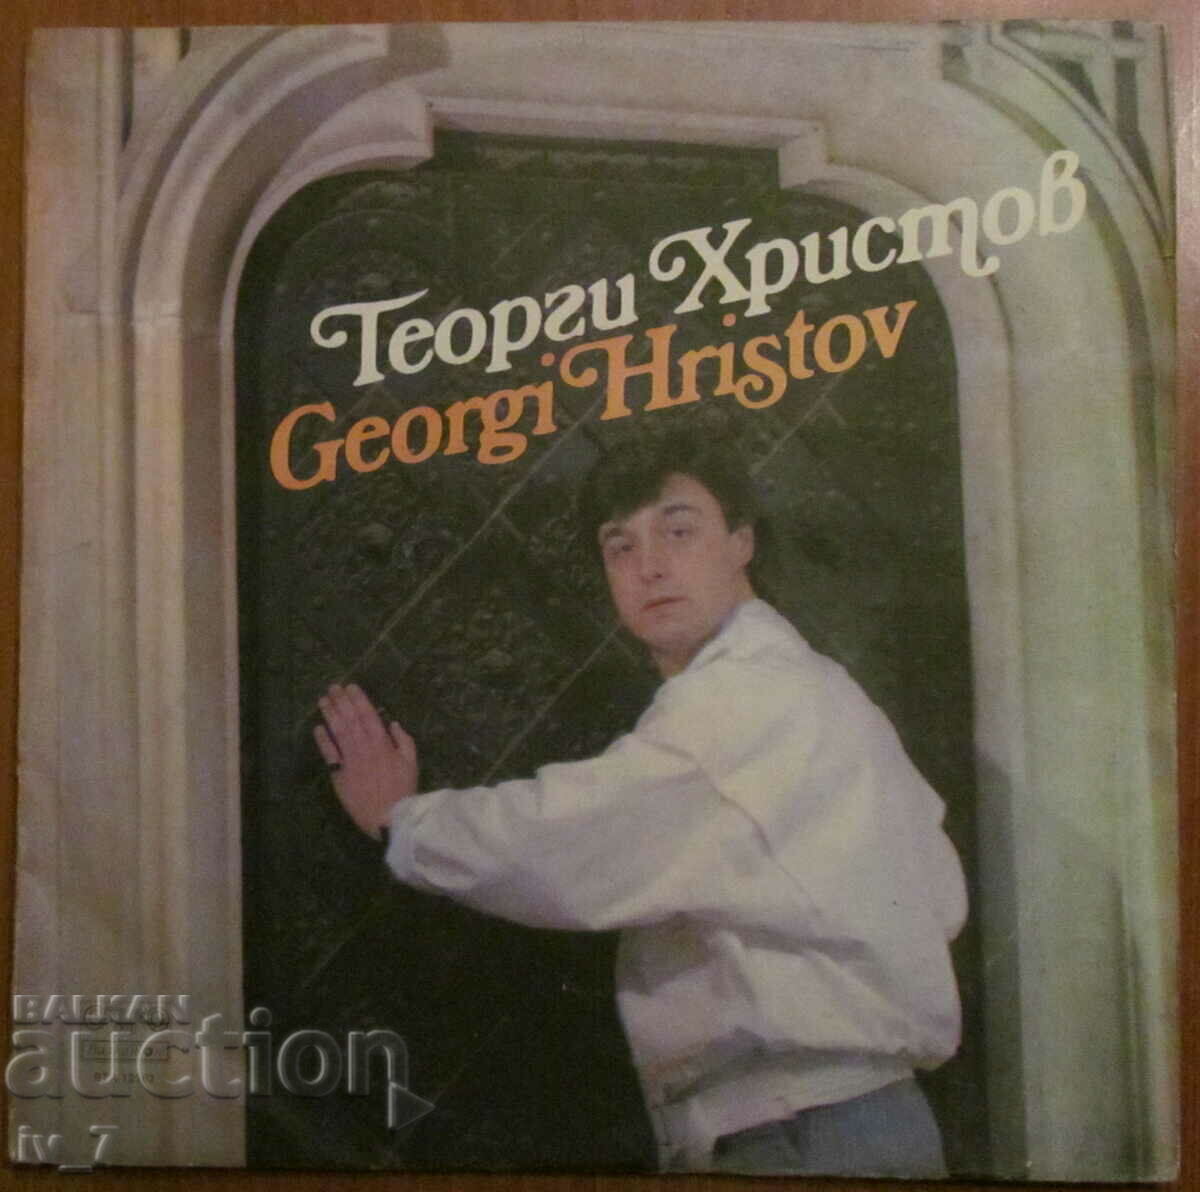 RECORD - GEORGI HRISTOV, large format